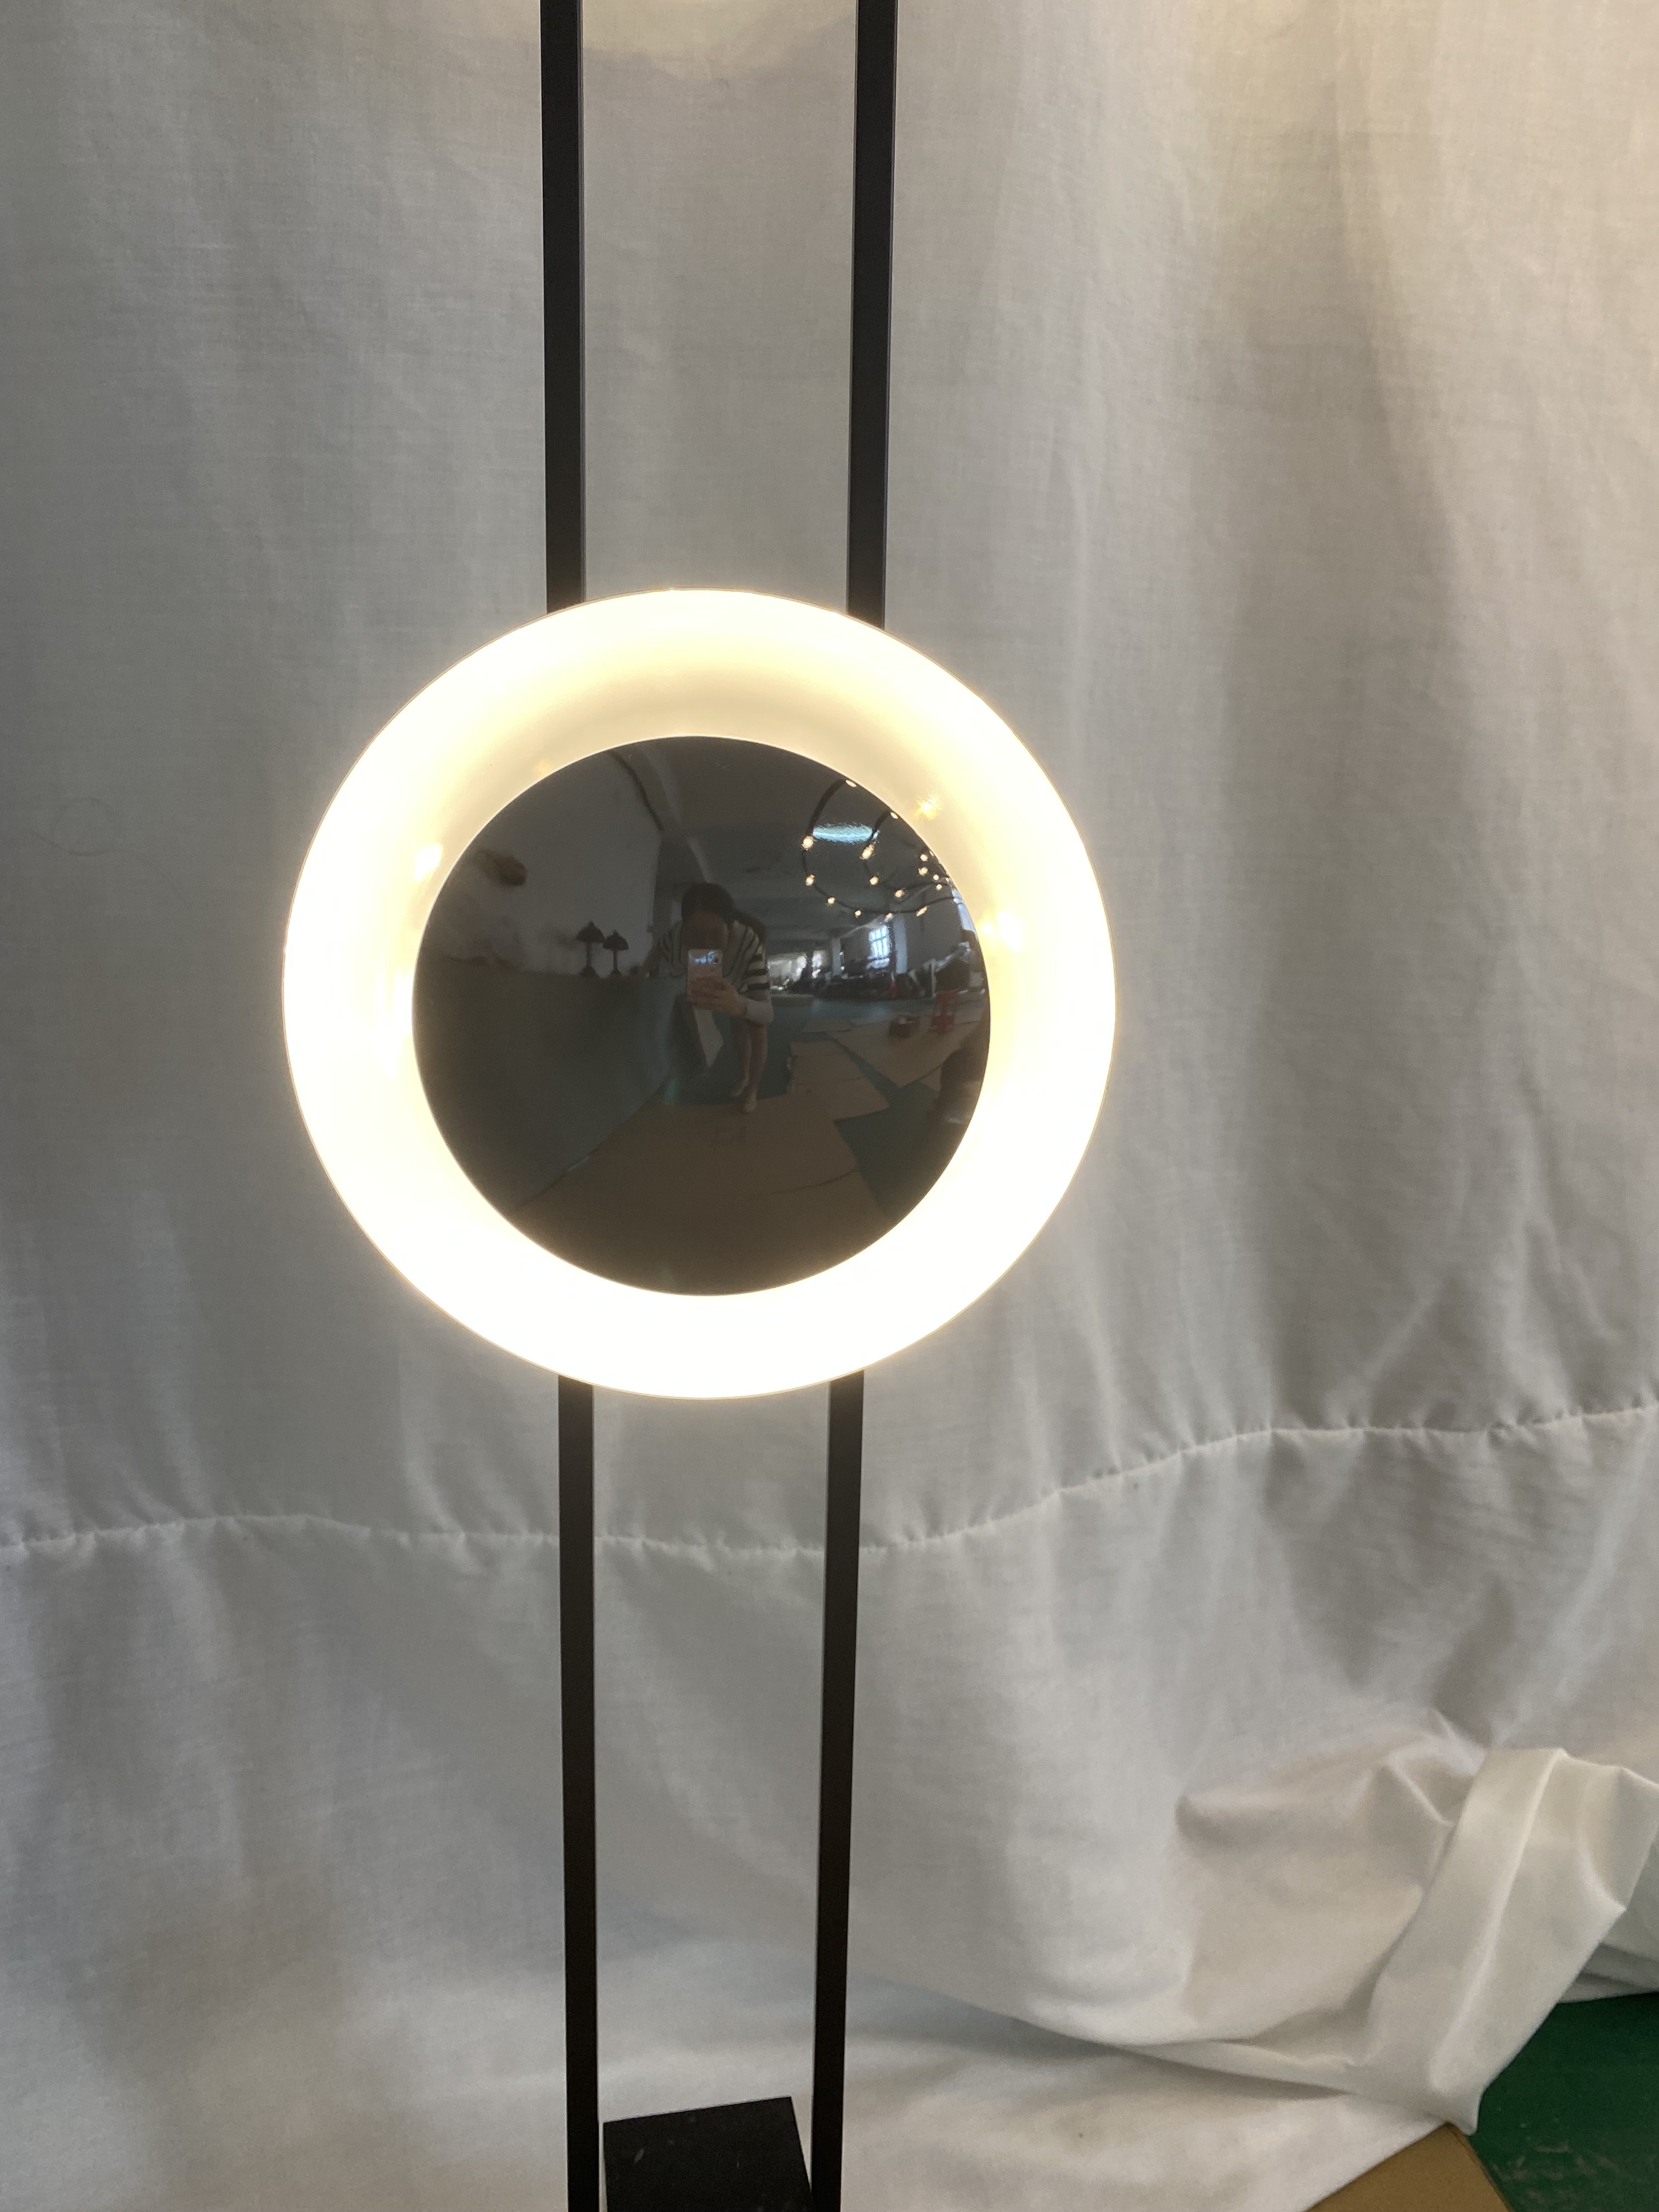 Нежный дизайн в скандинавском стиле, зеркало, круглый утюг, напольный светильник для виллы (KYA-10F)